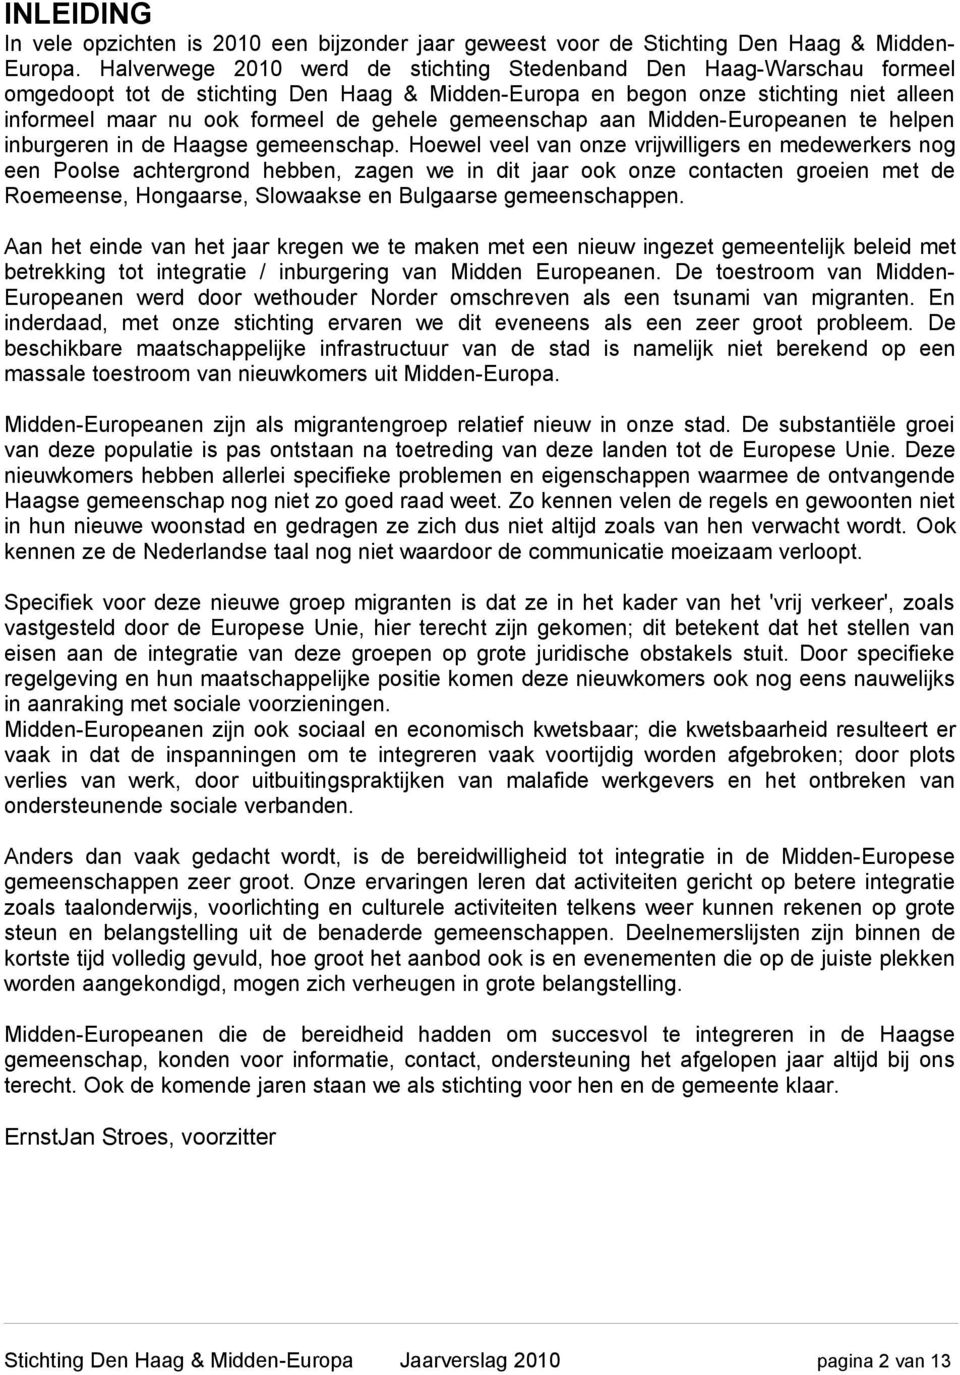 gemeenschap aan Midden-Europeanen te helpen inburgeren in de Haagse gemeenschap.